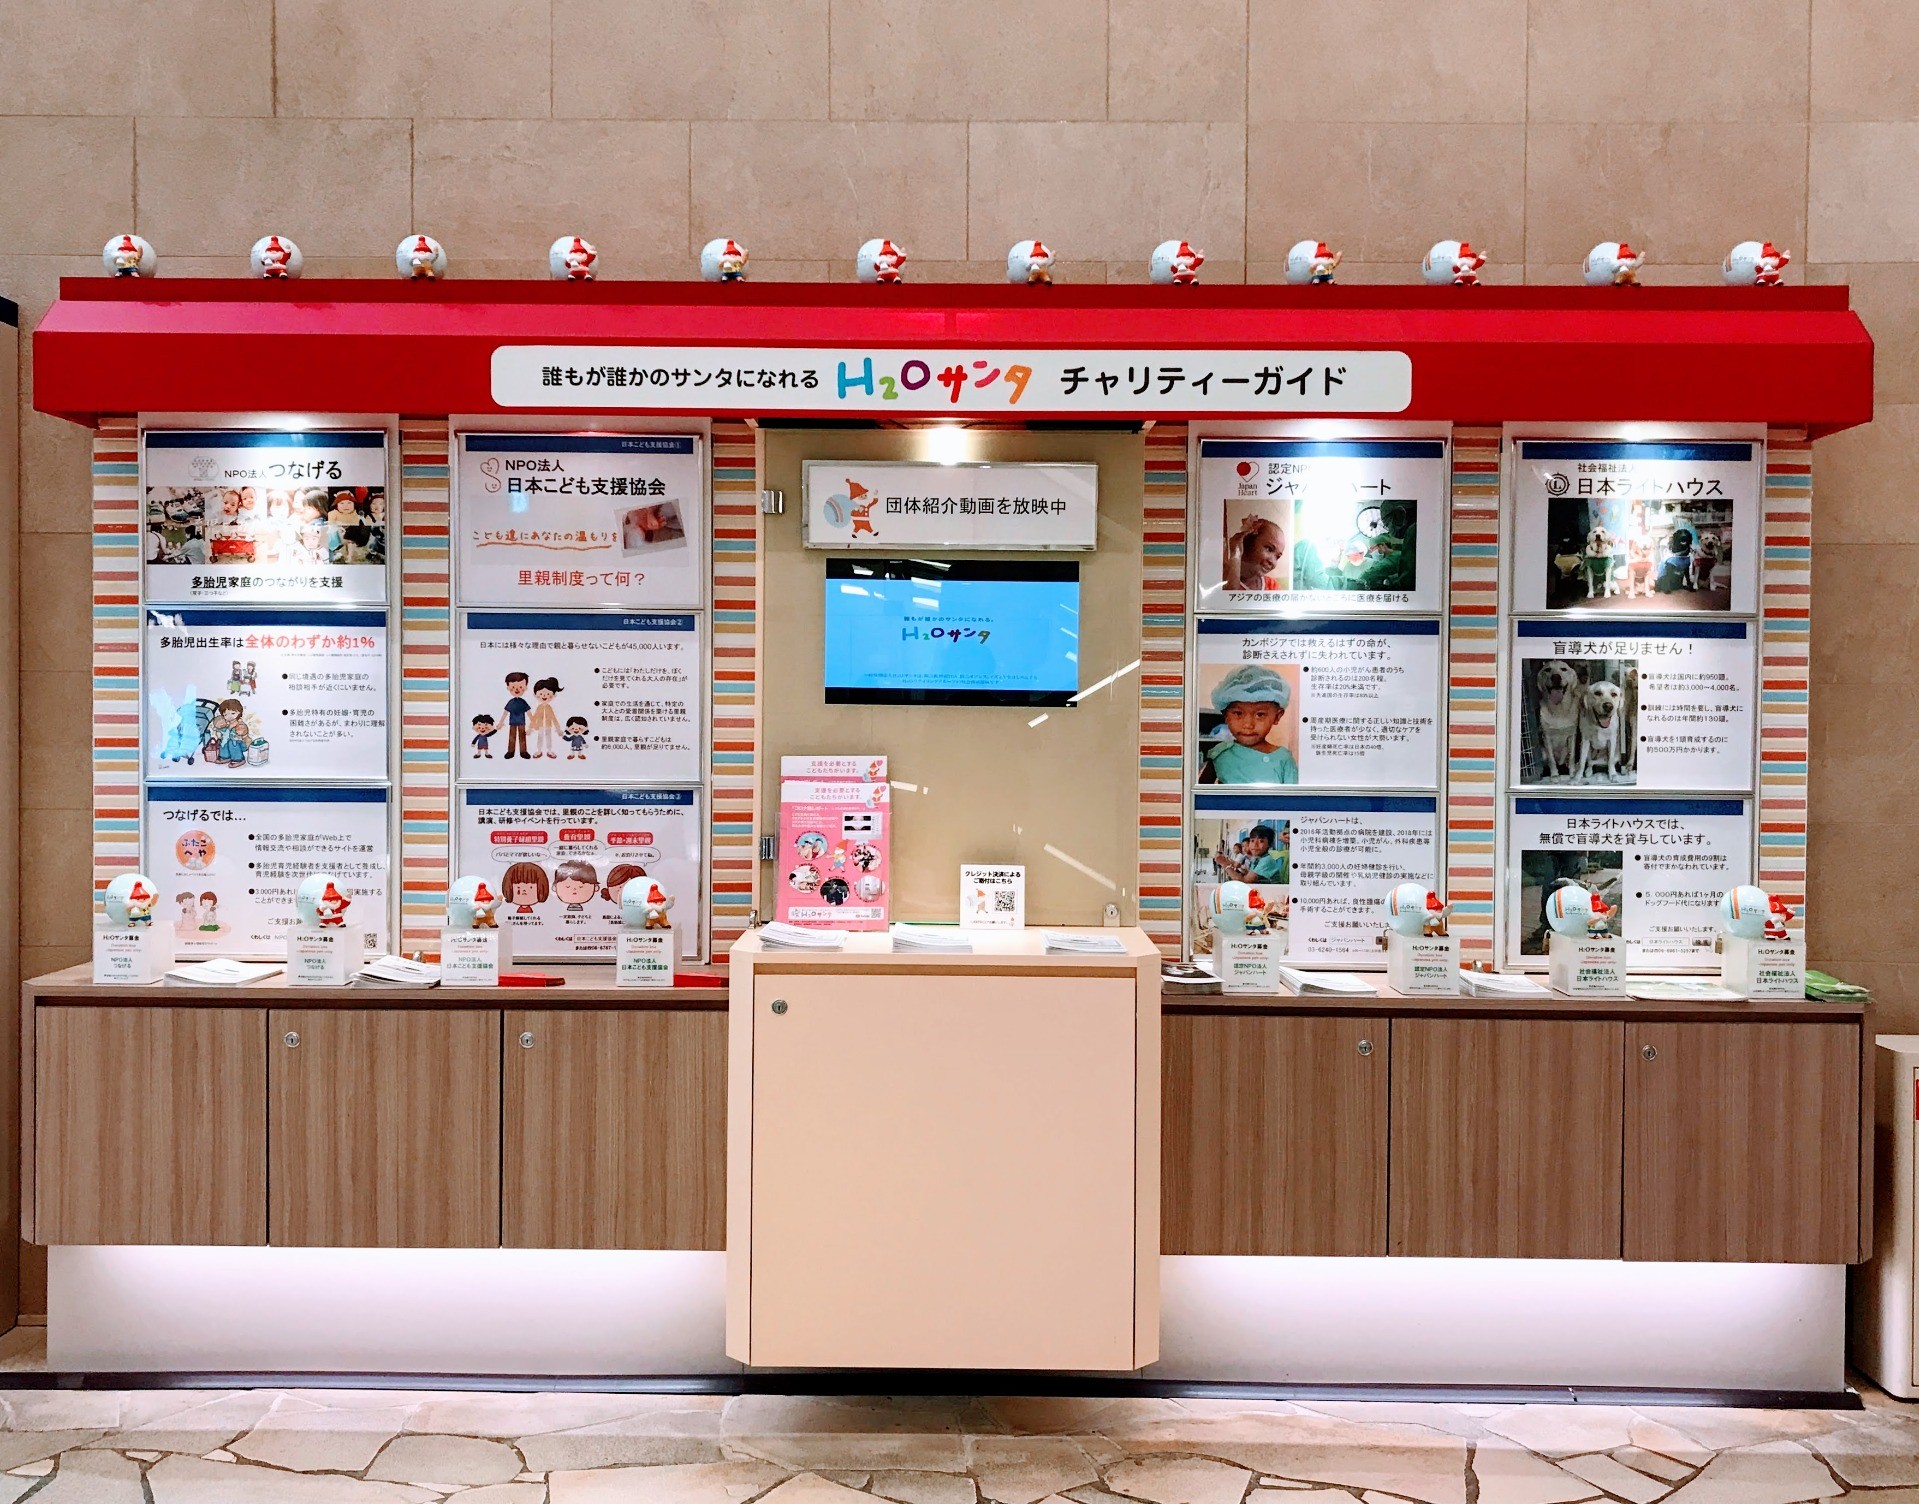 阪急百貨店 Ｈ２Ｏ（エイチ・ツー・オー ）サンタチャリティガイド設置いただいてます